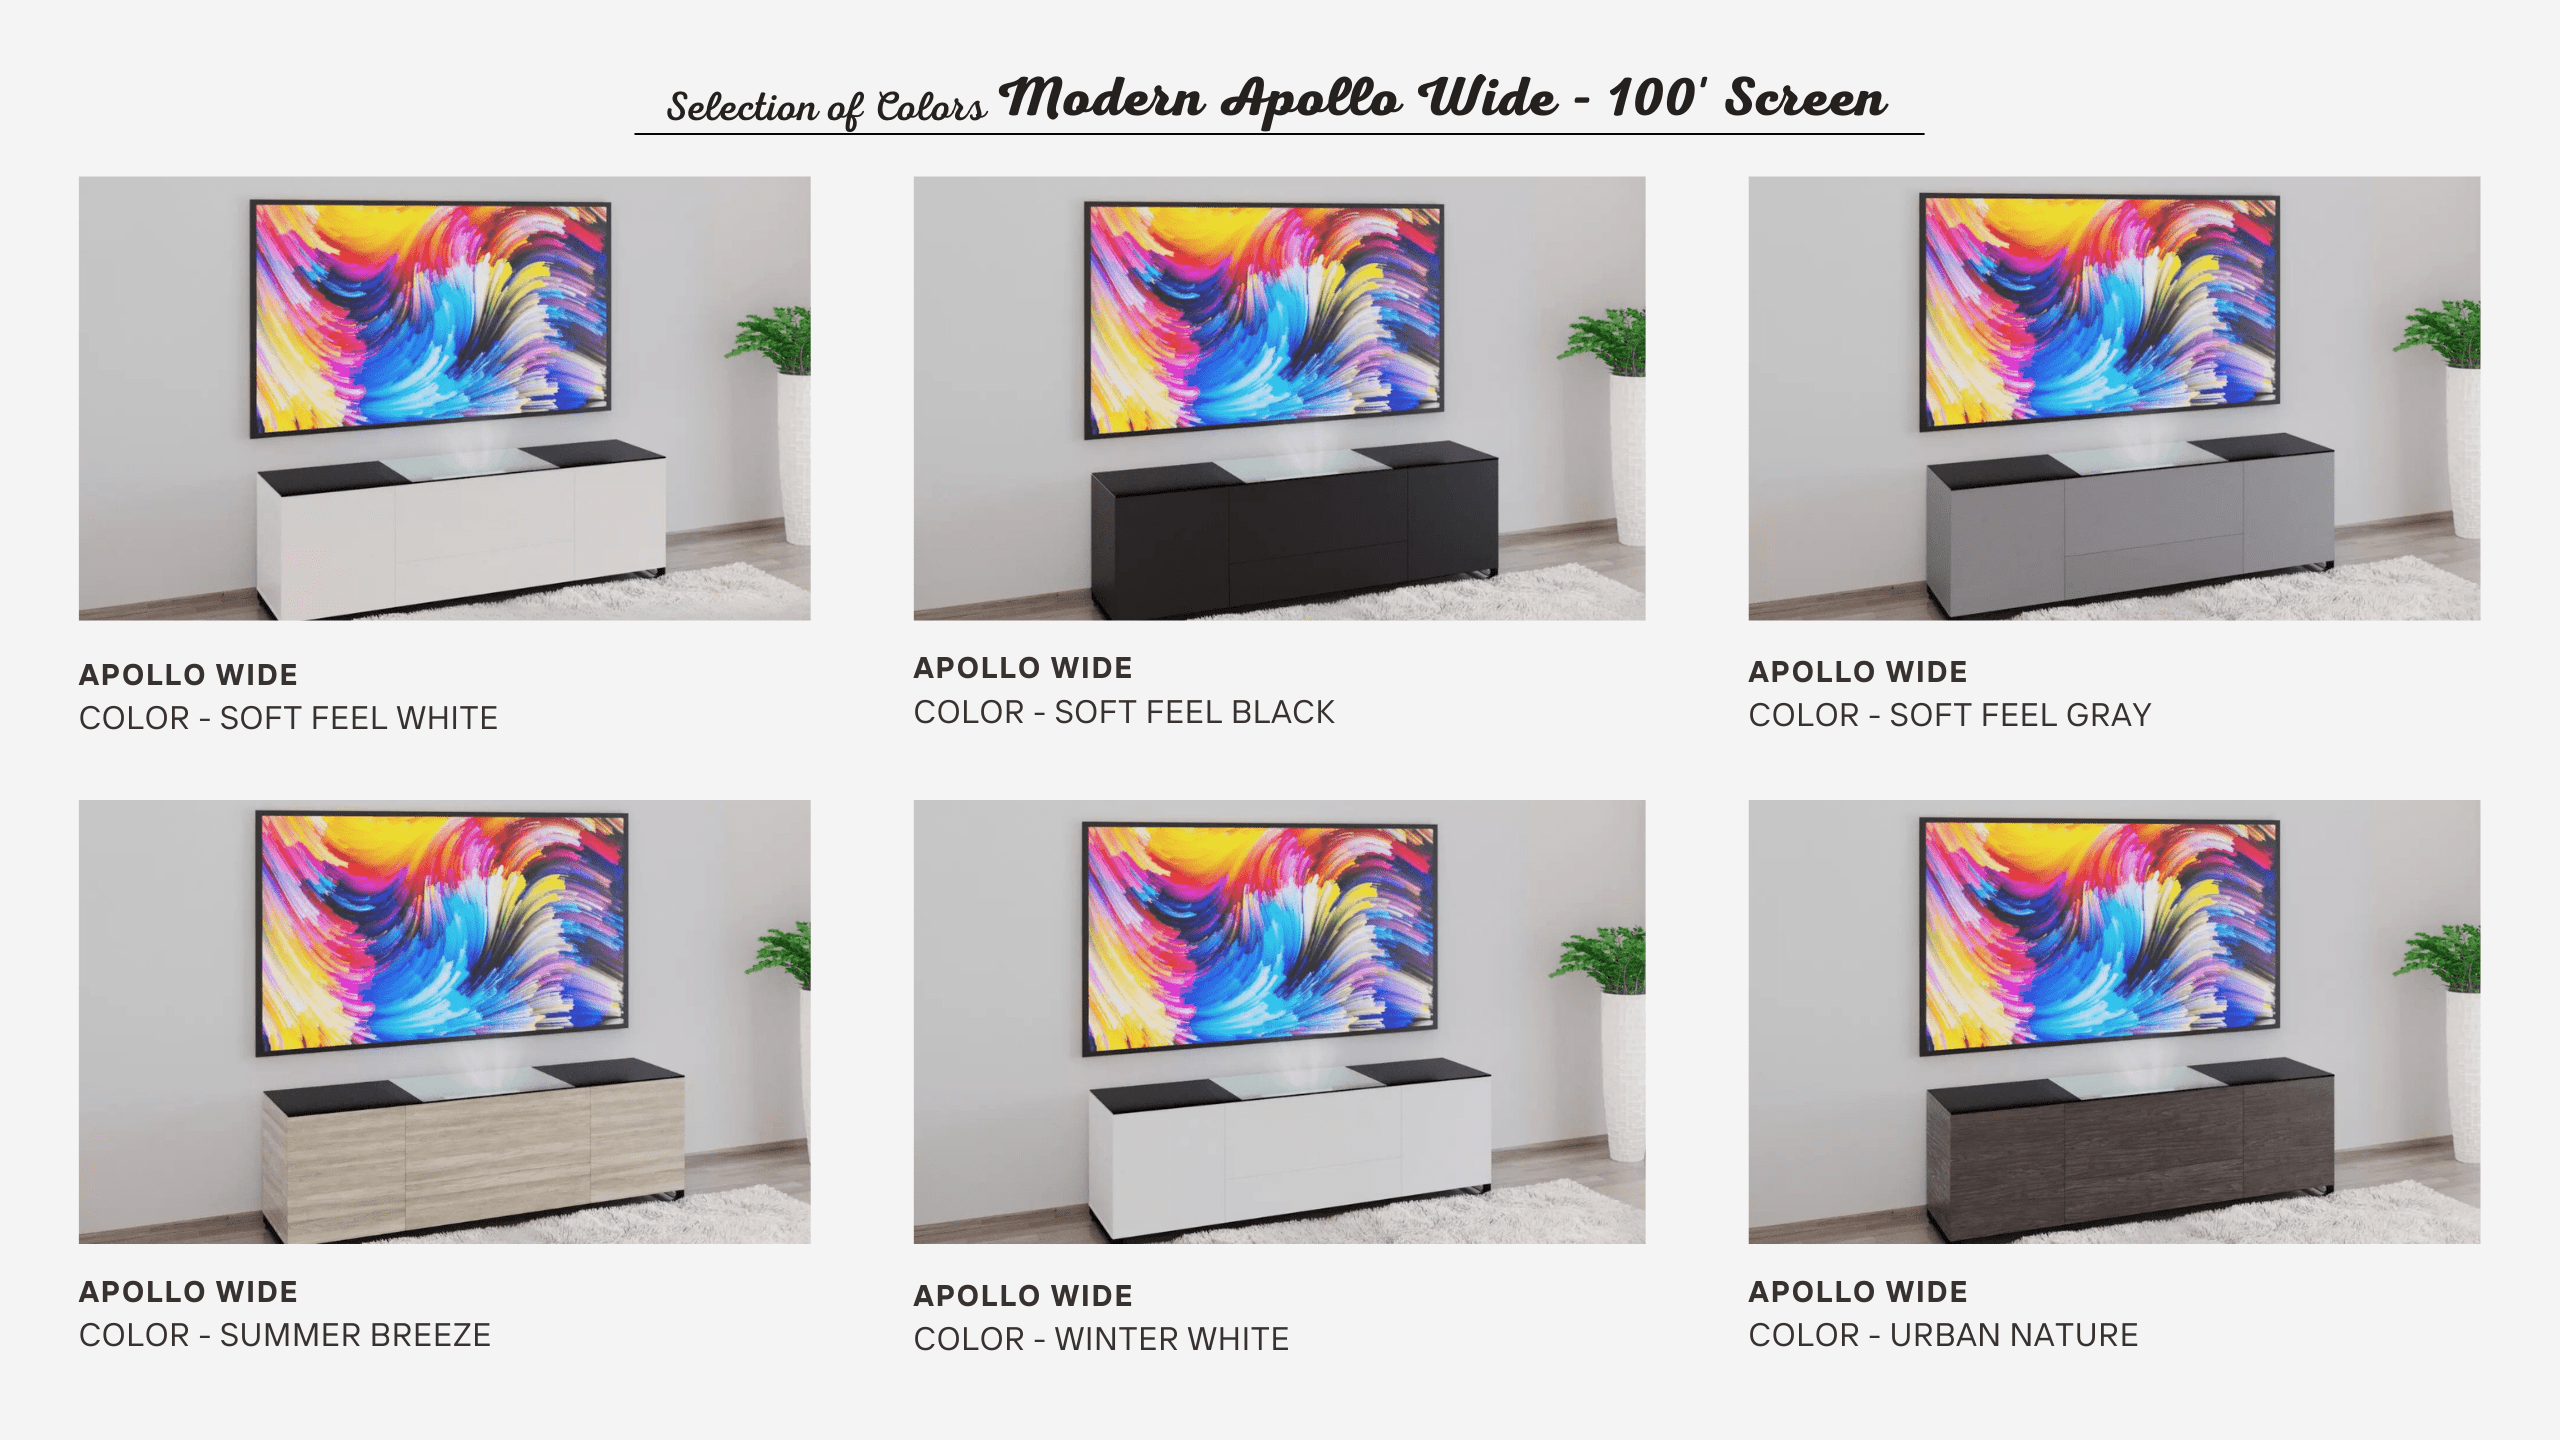 Modern Apollo Wide | 100' Screen | Wide Cabinets | Aegis AV Cabinets